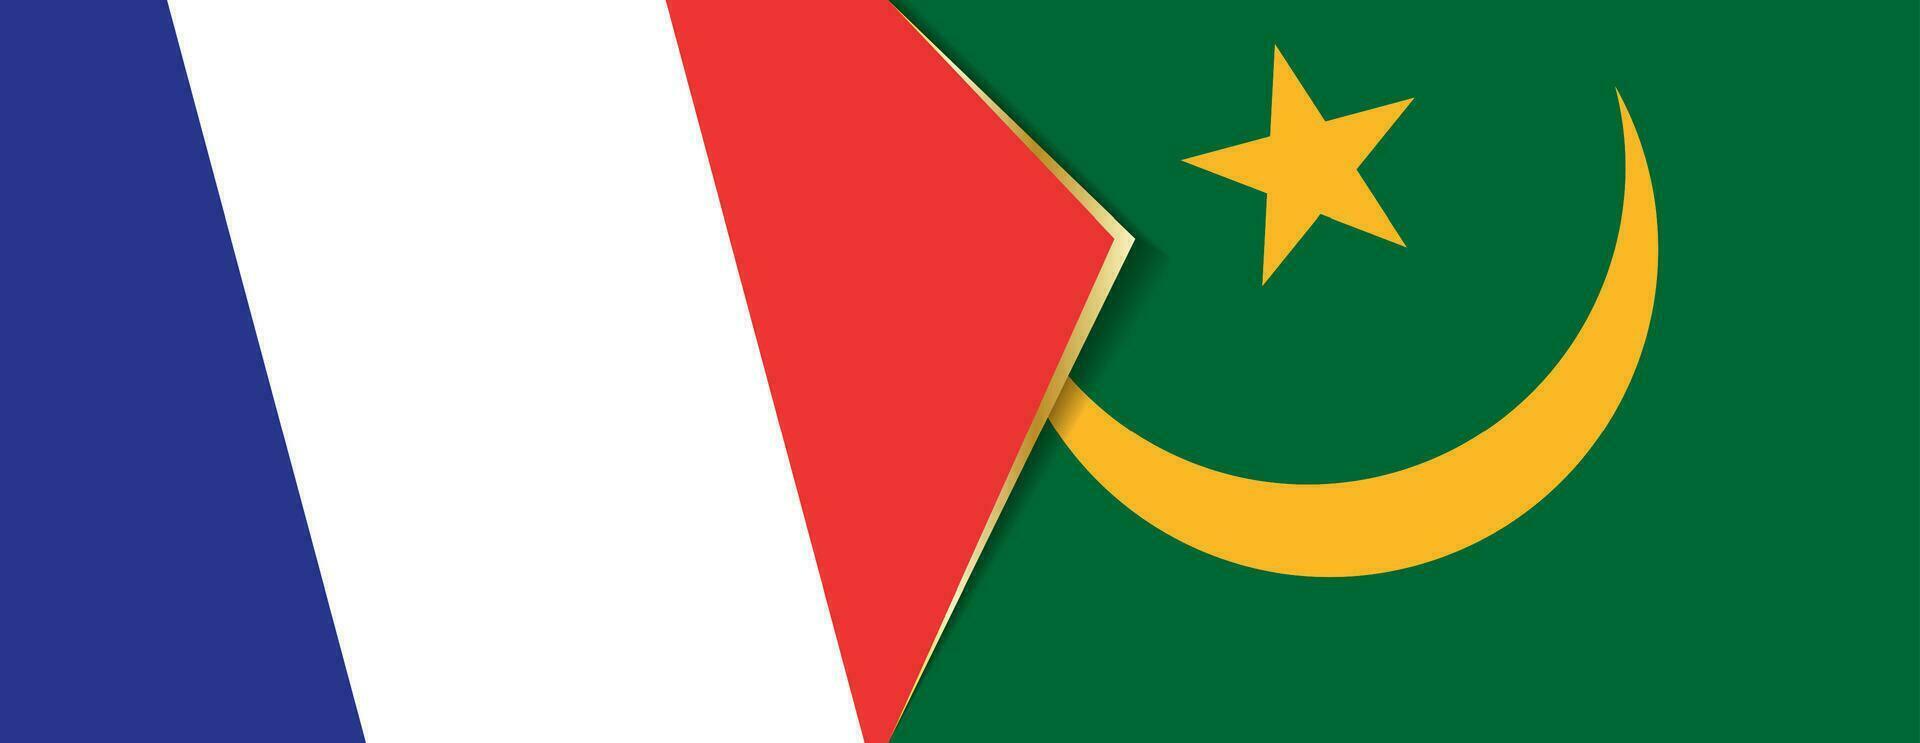 França e Mauritânia bandeiras, dois vetor bandeiras.